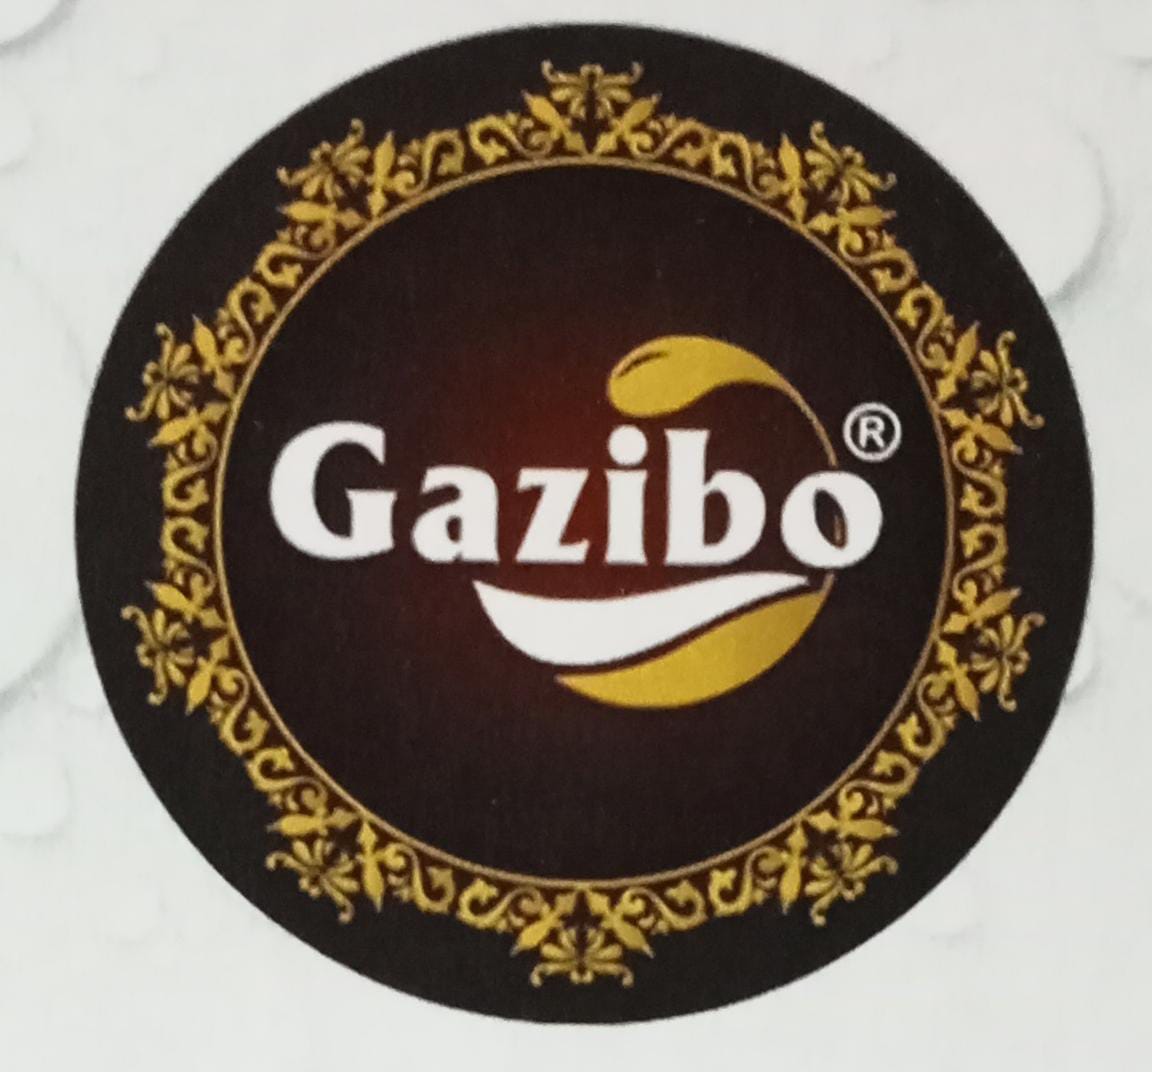 Gazibo